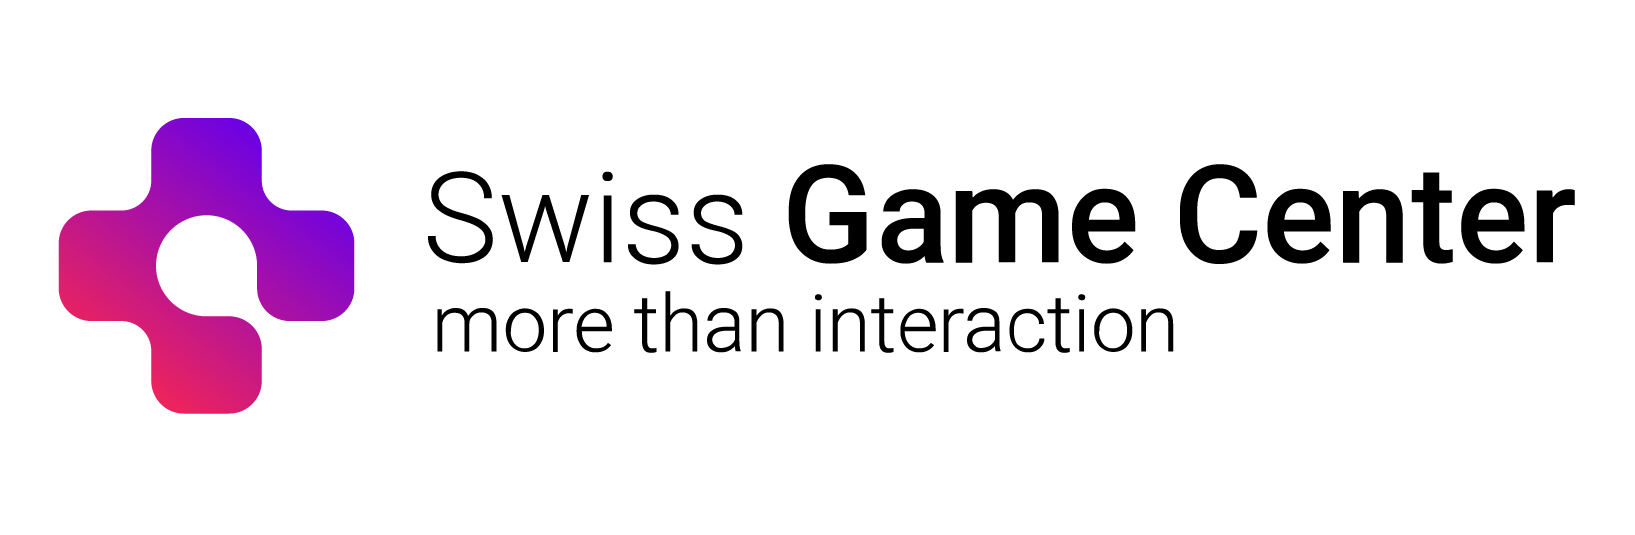 Logo du Swiss Game Center